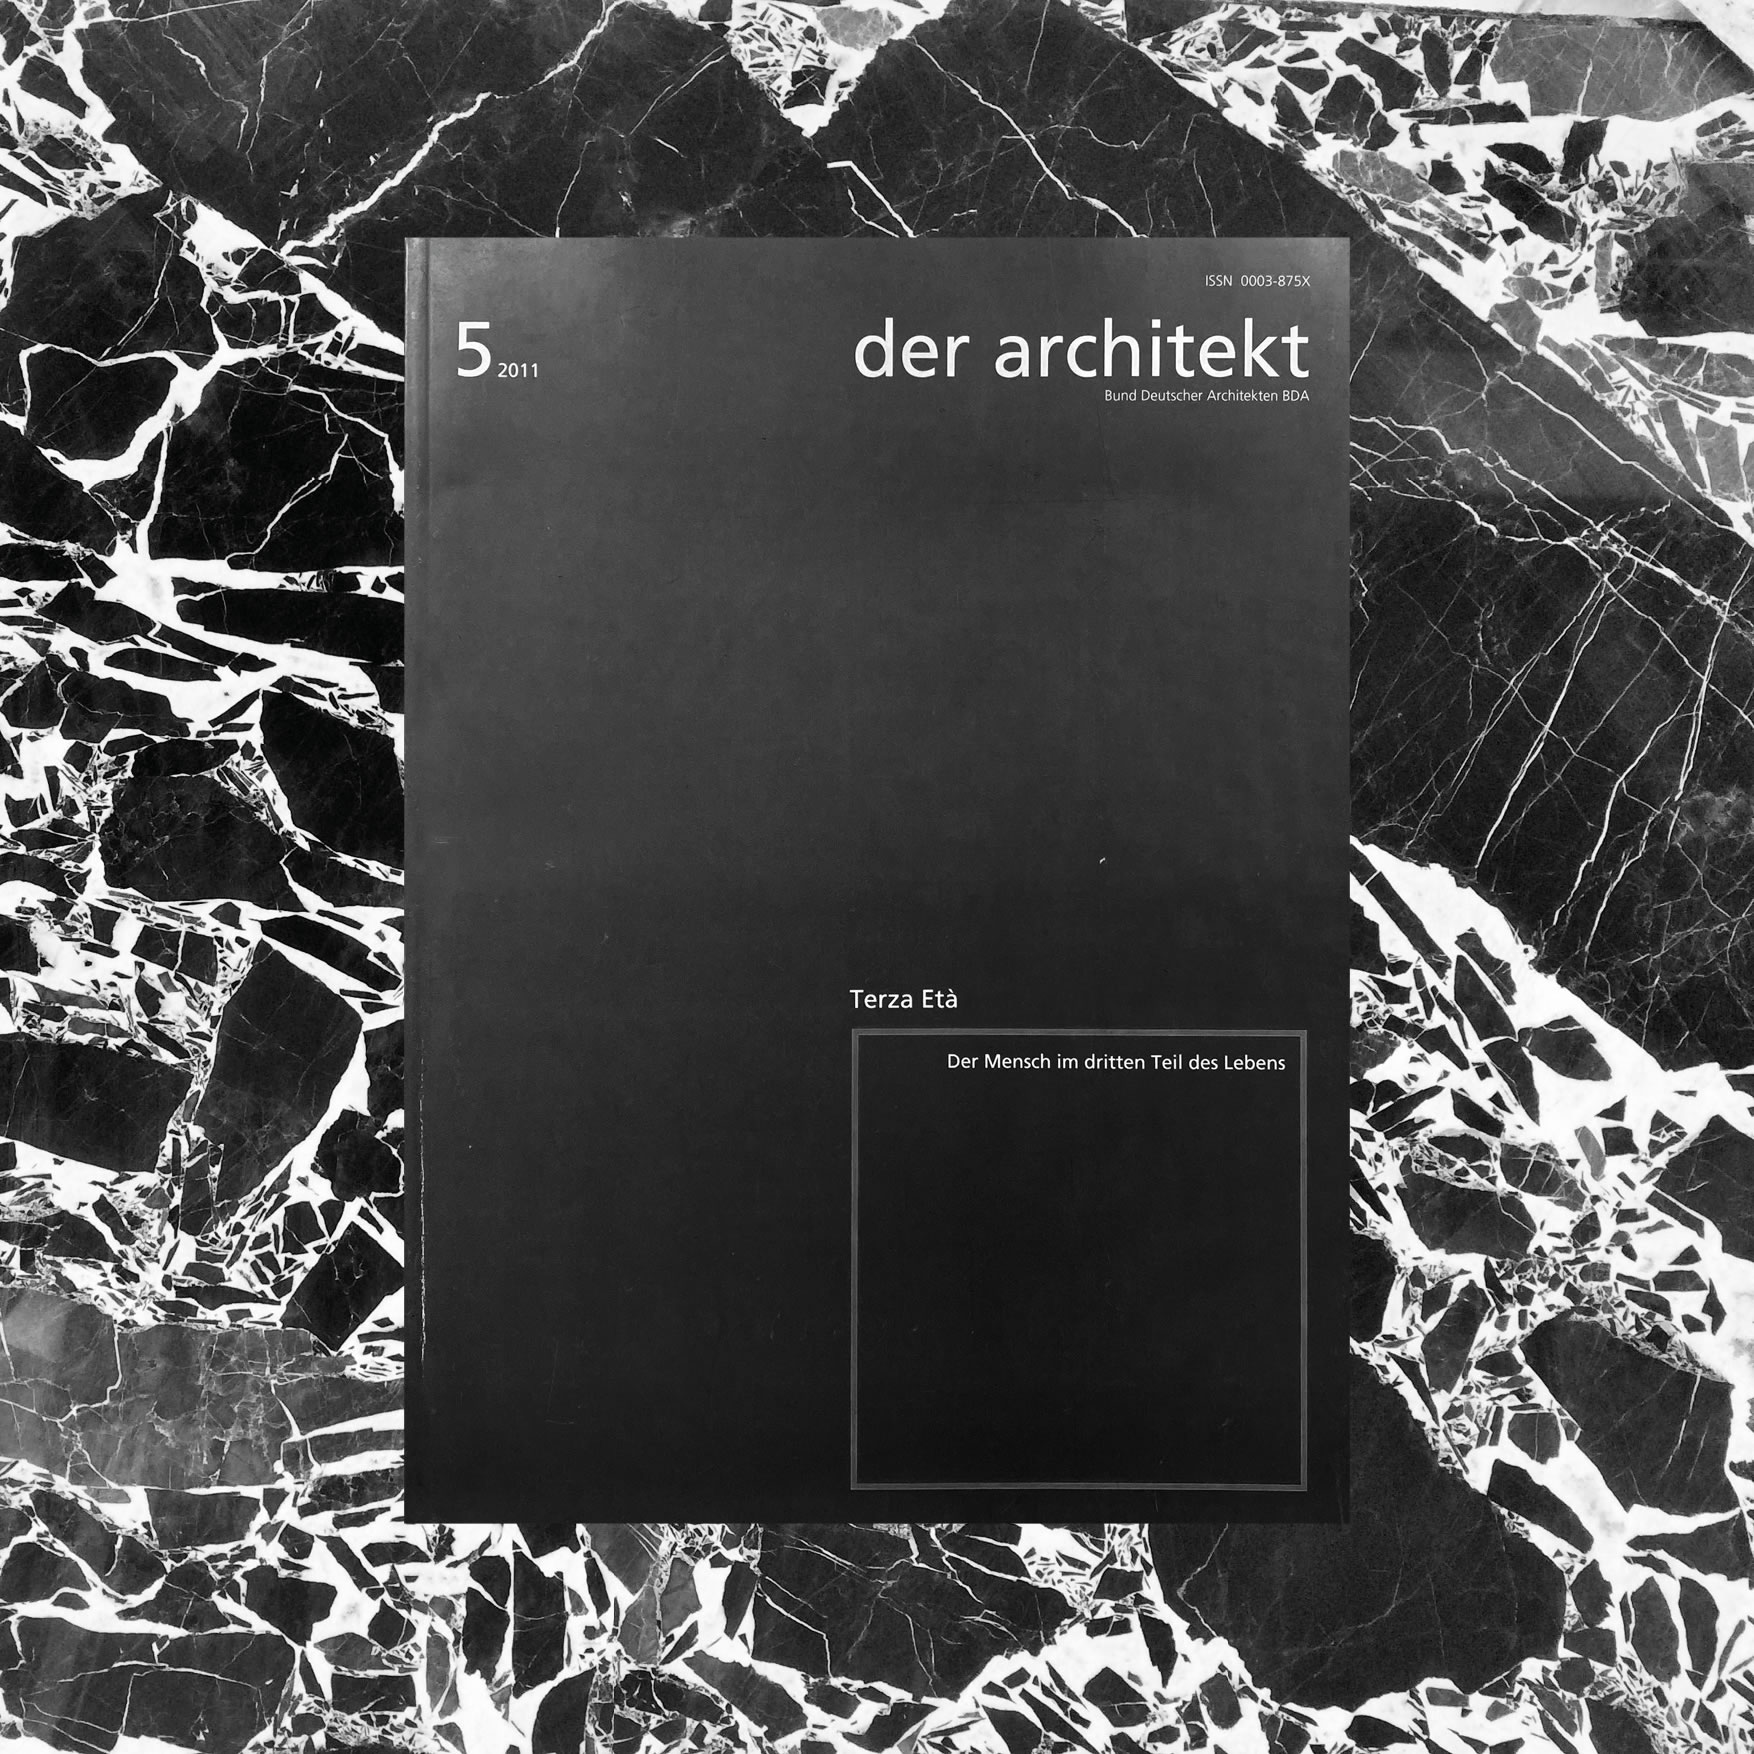 Press – The Architect architecture magazine 5-11